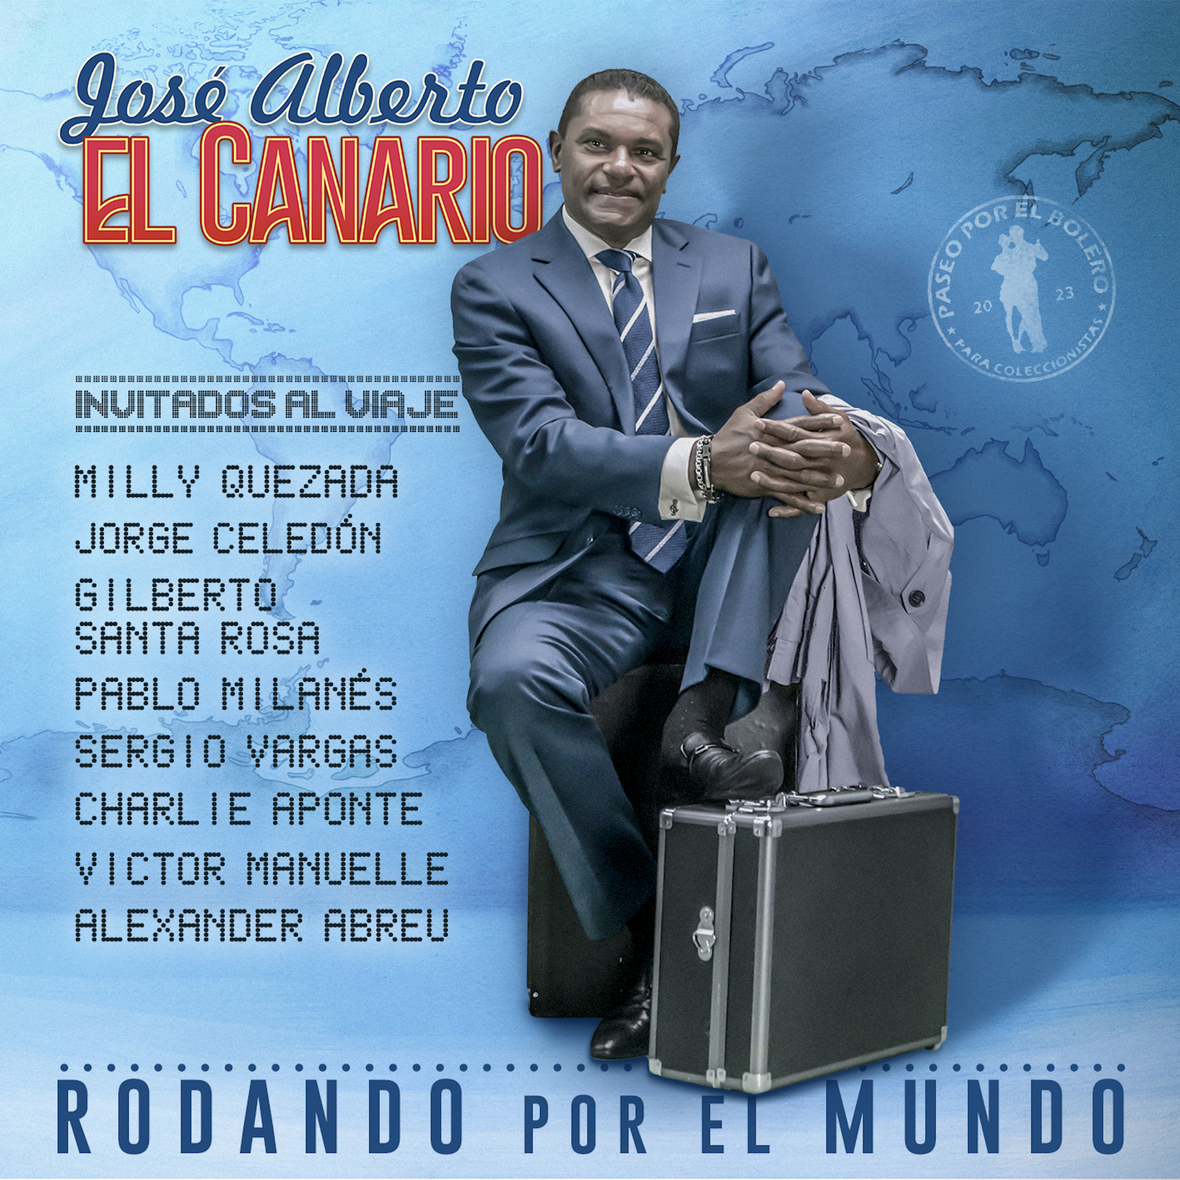 JOSÉ ALBERTO “El Canario” estreno nuevo tema “Rodando por el mundo”